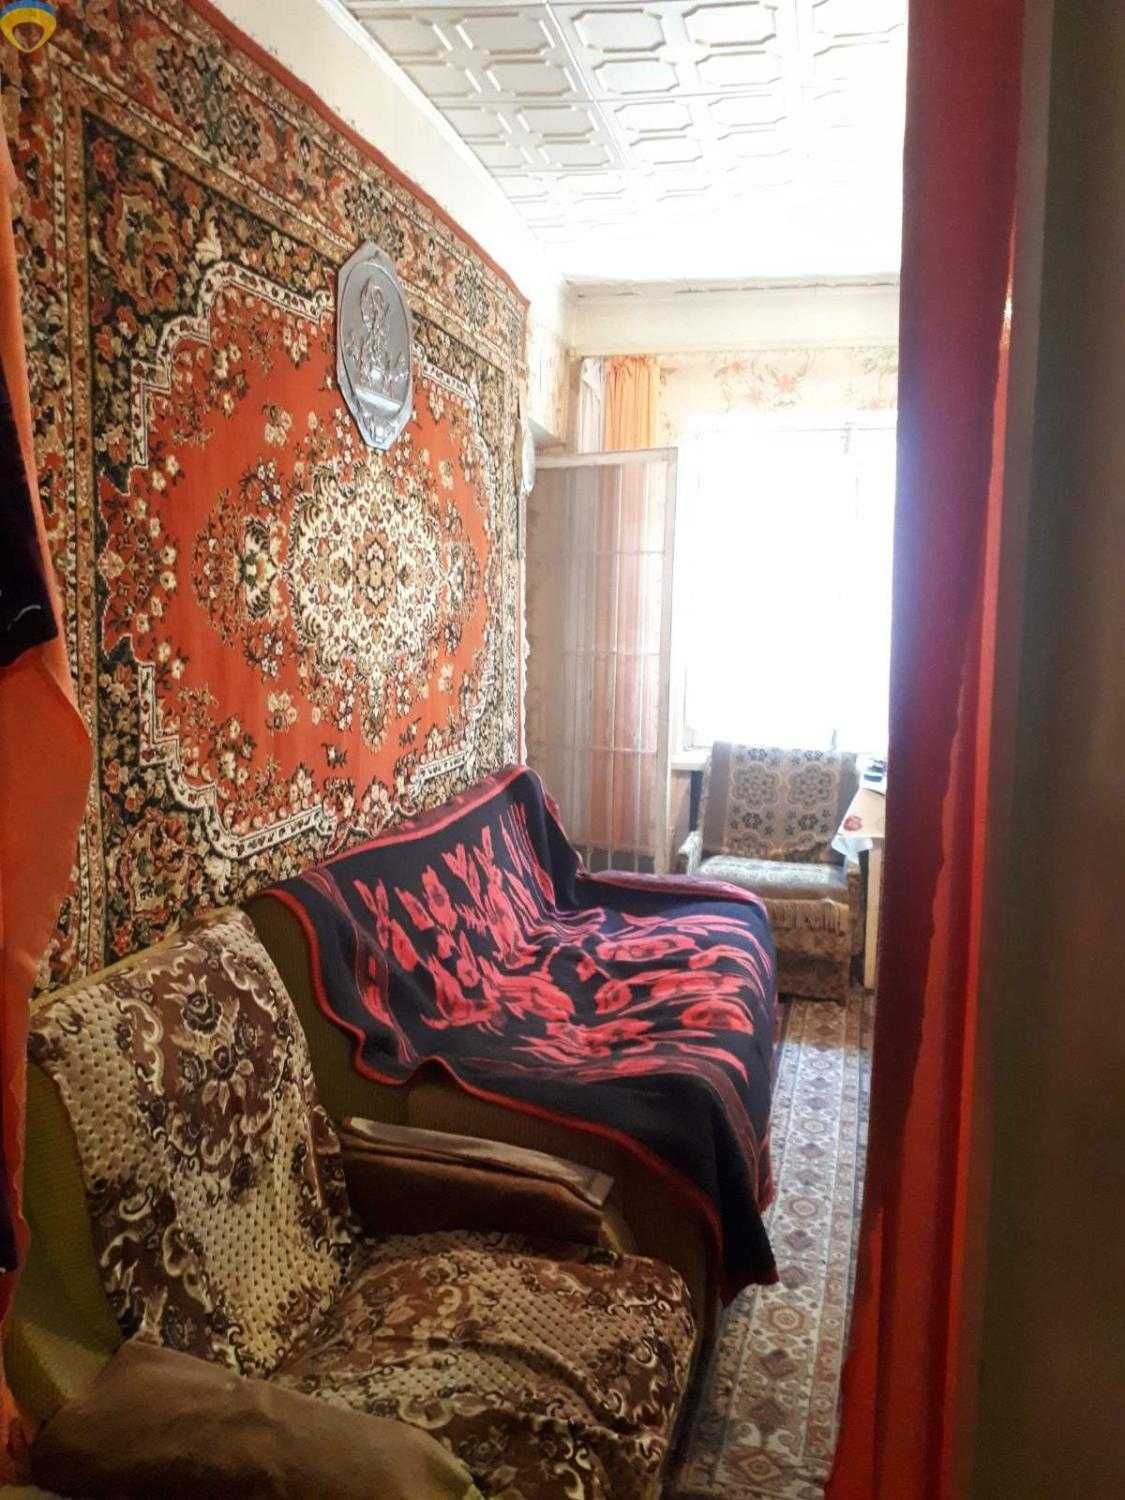 Продается дом в Одессе недалеко от моря